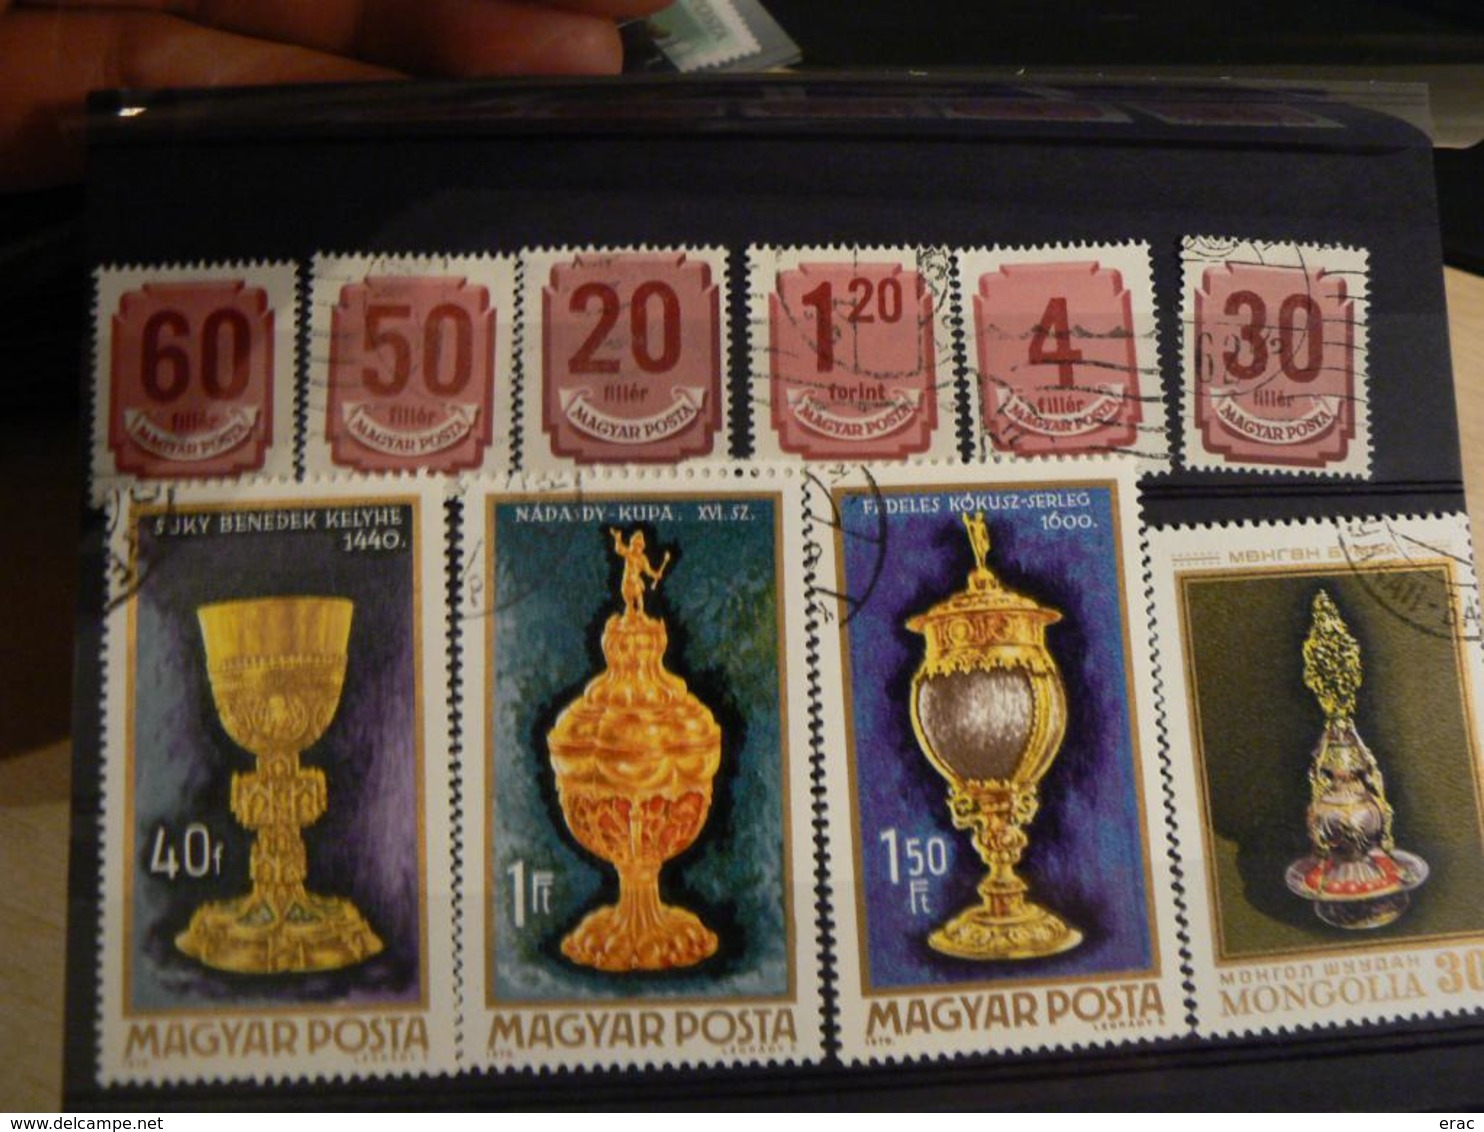 HONGRIE - Collection de timbres anciens et récents